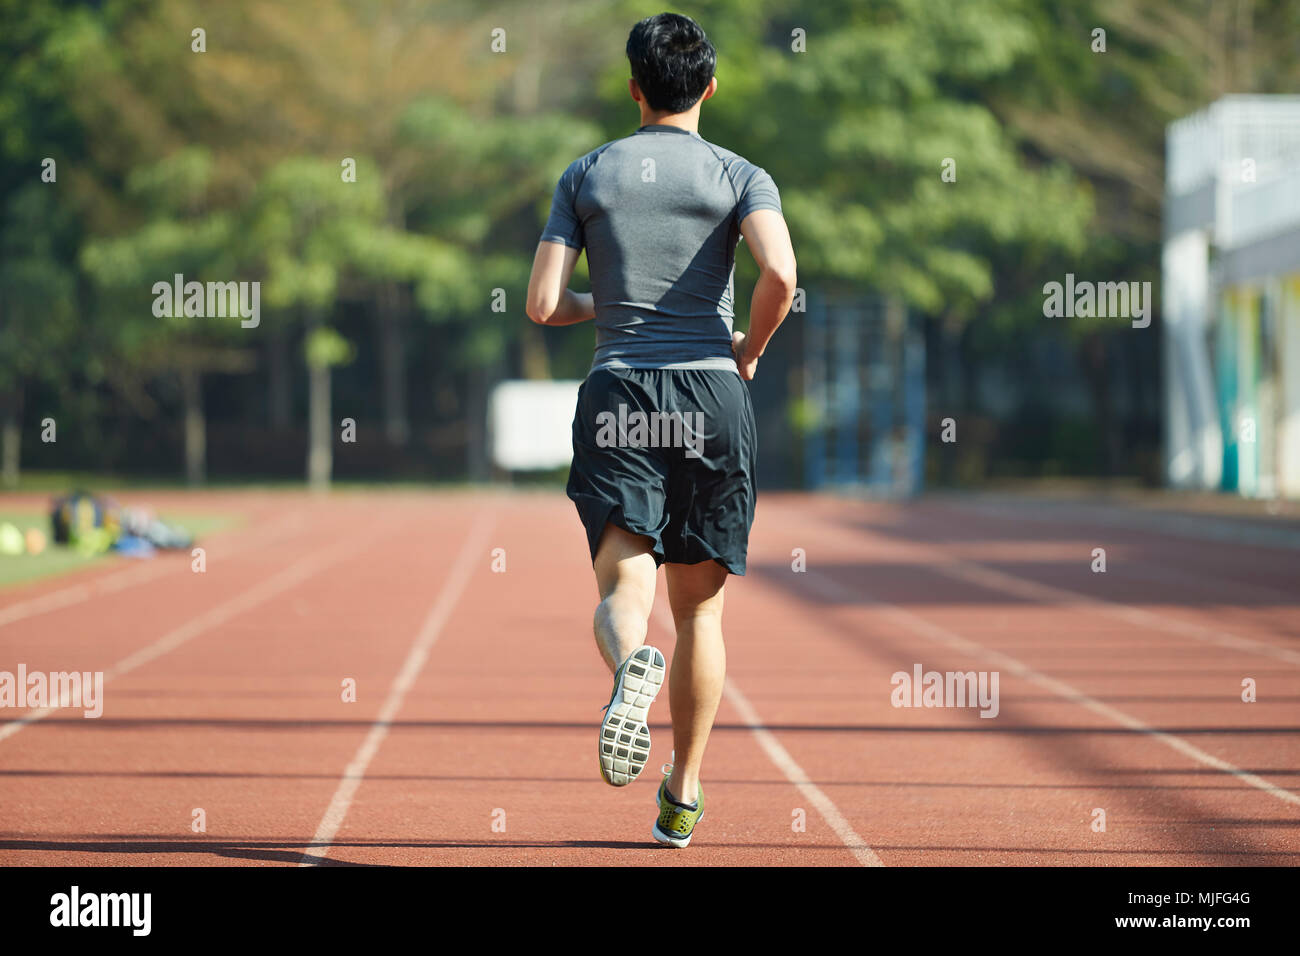 Jeune athlète masculin homme asiatique d'exécution de l'exercice de formation sur la voie, vue arrière. Banque D'Images